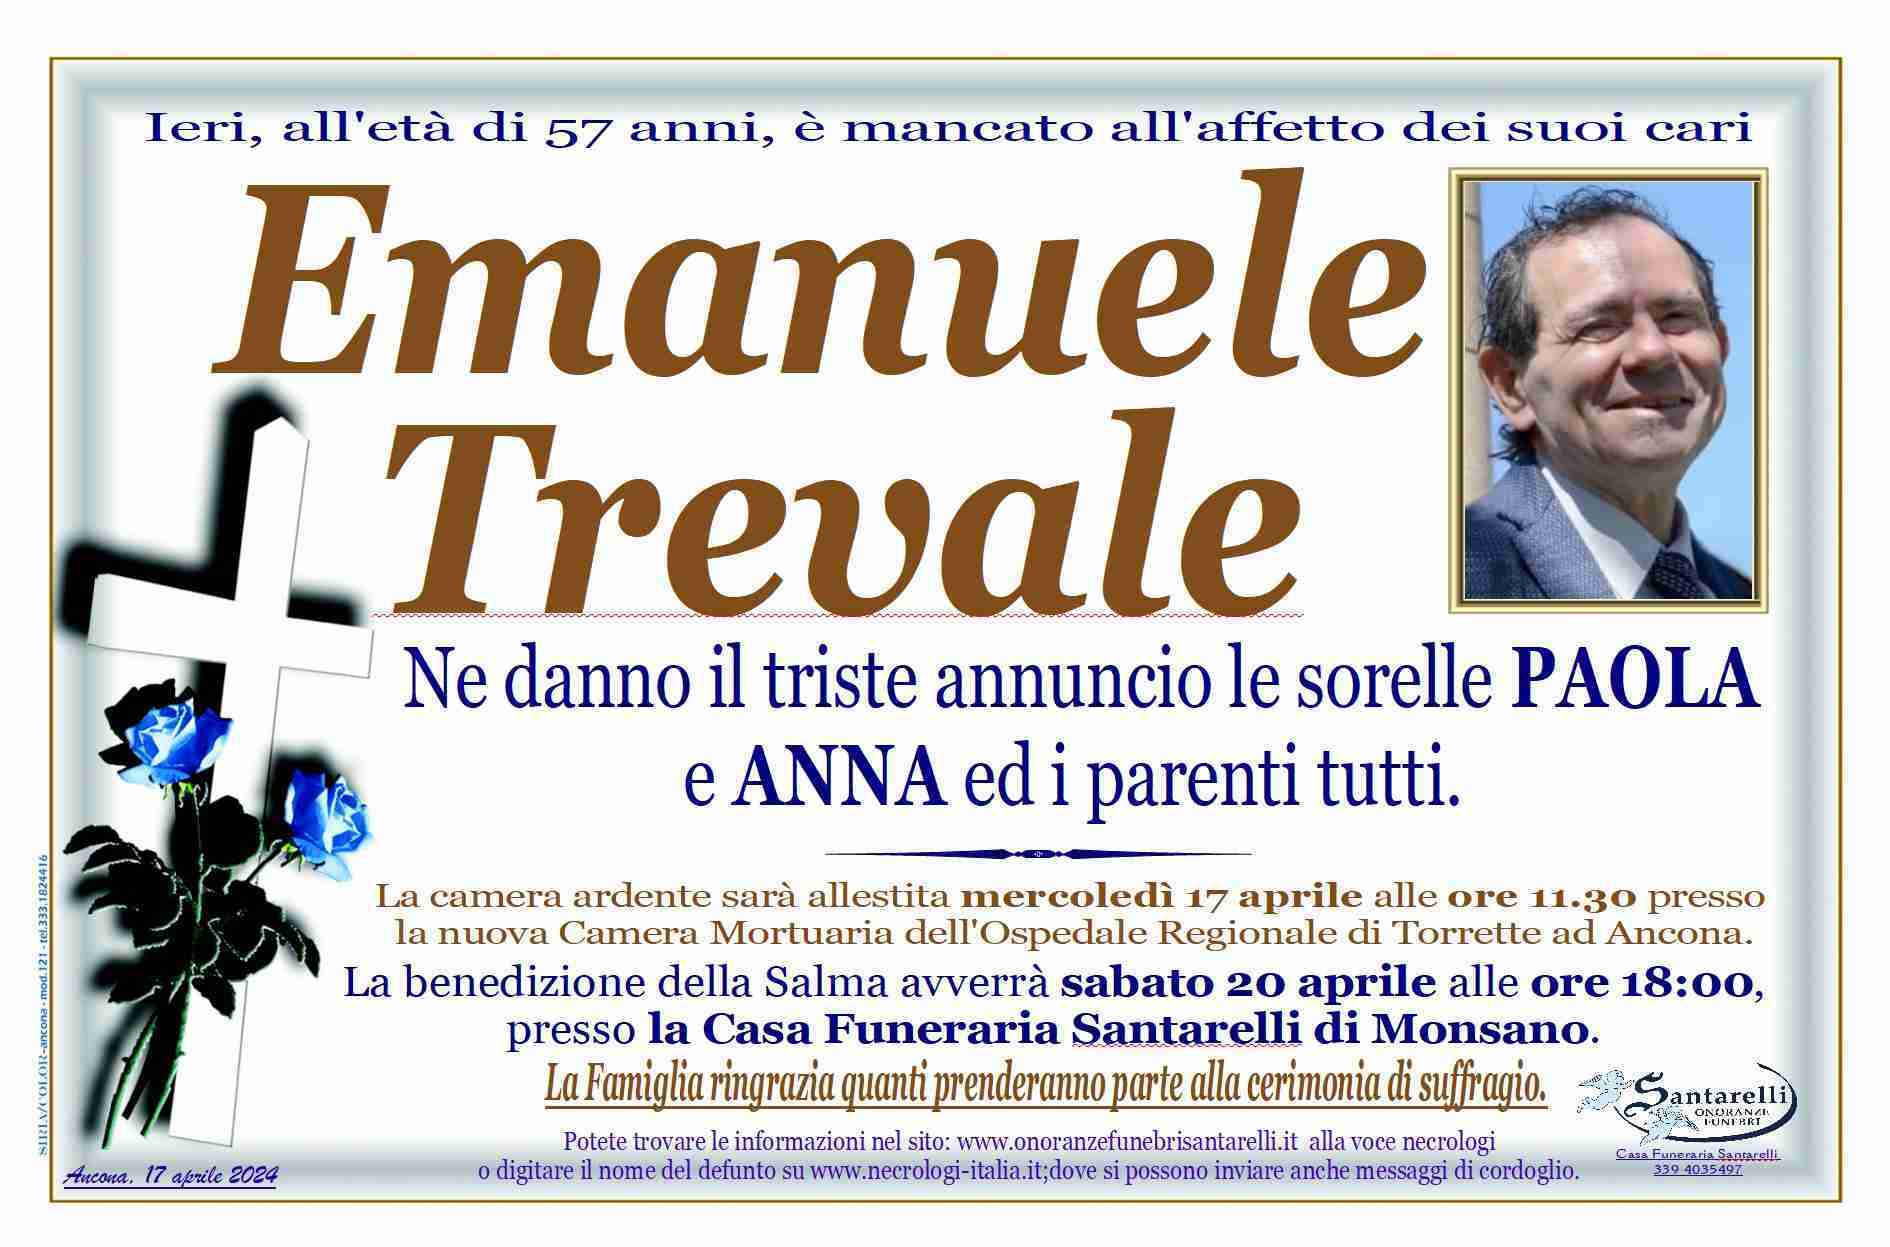 Emanuele Trevale